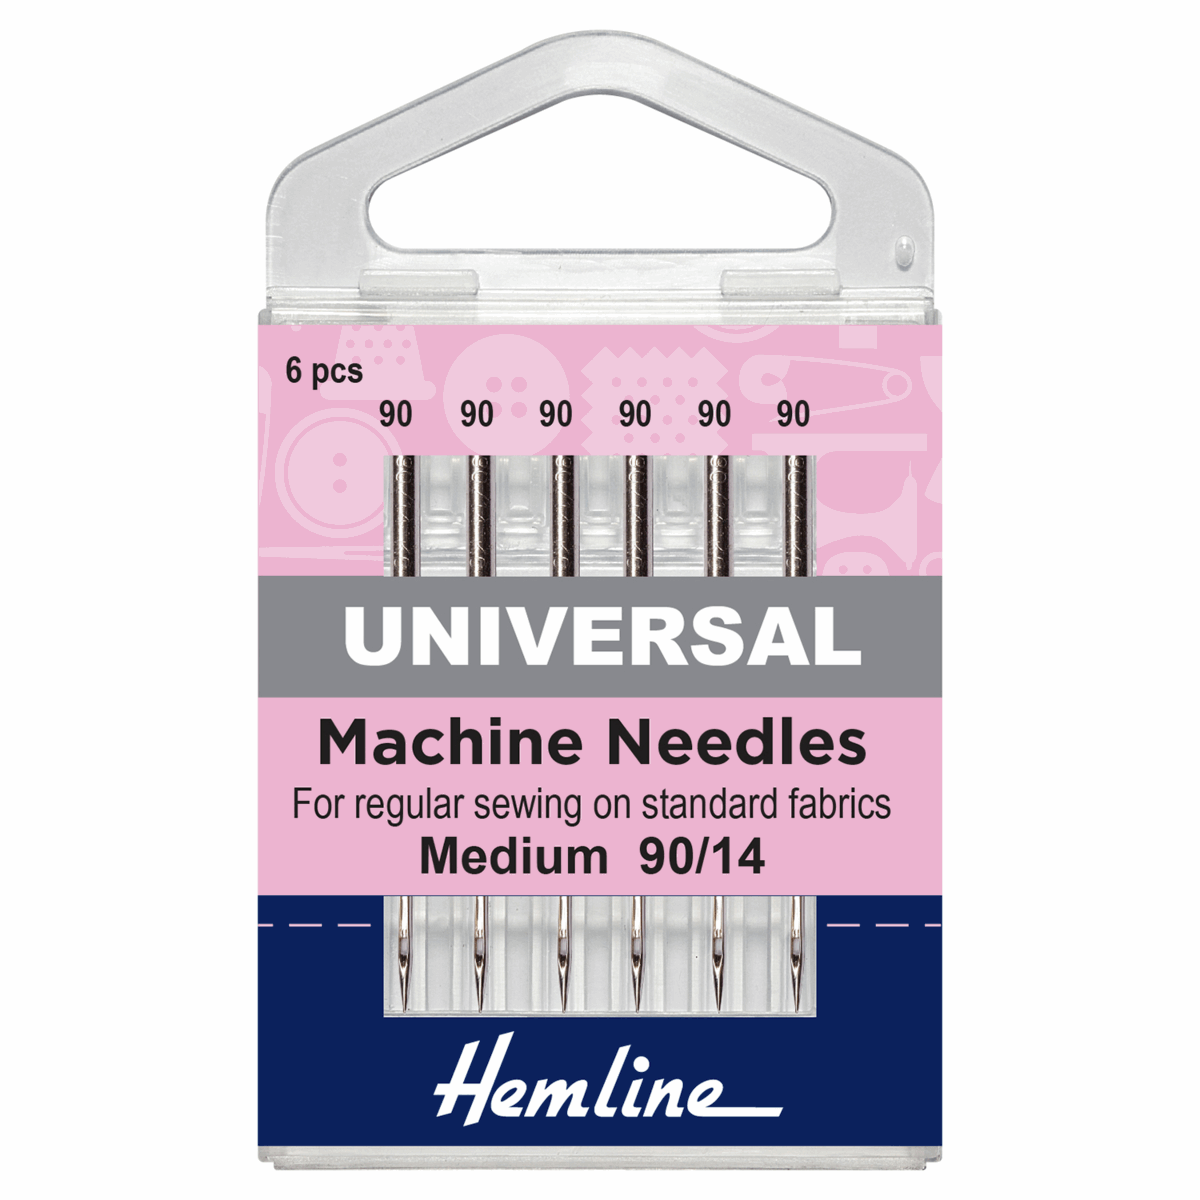 Sewing Machine Needles: Universal: Medium/Heavy 90/14